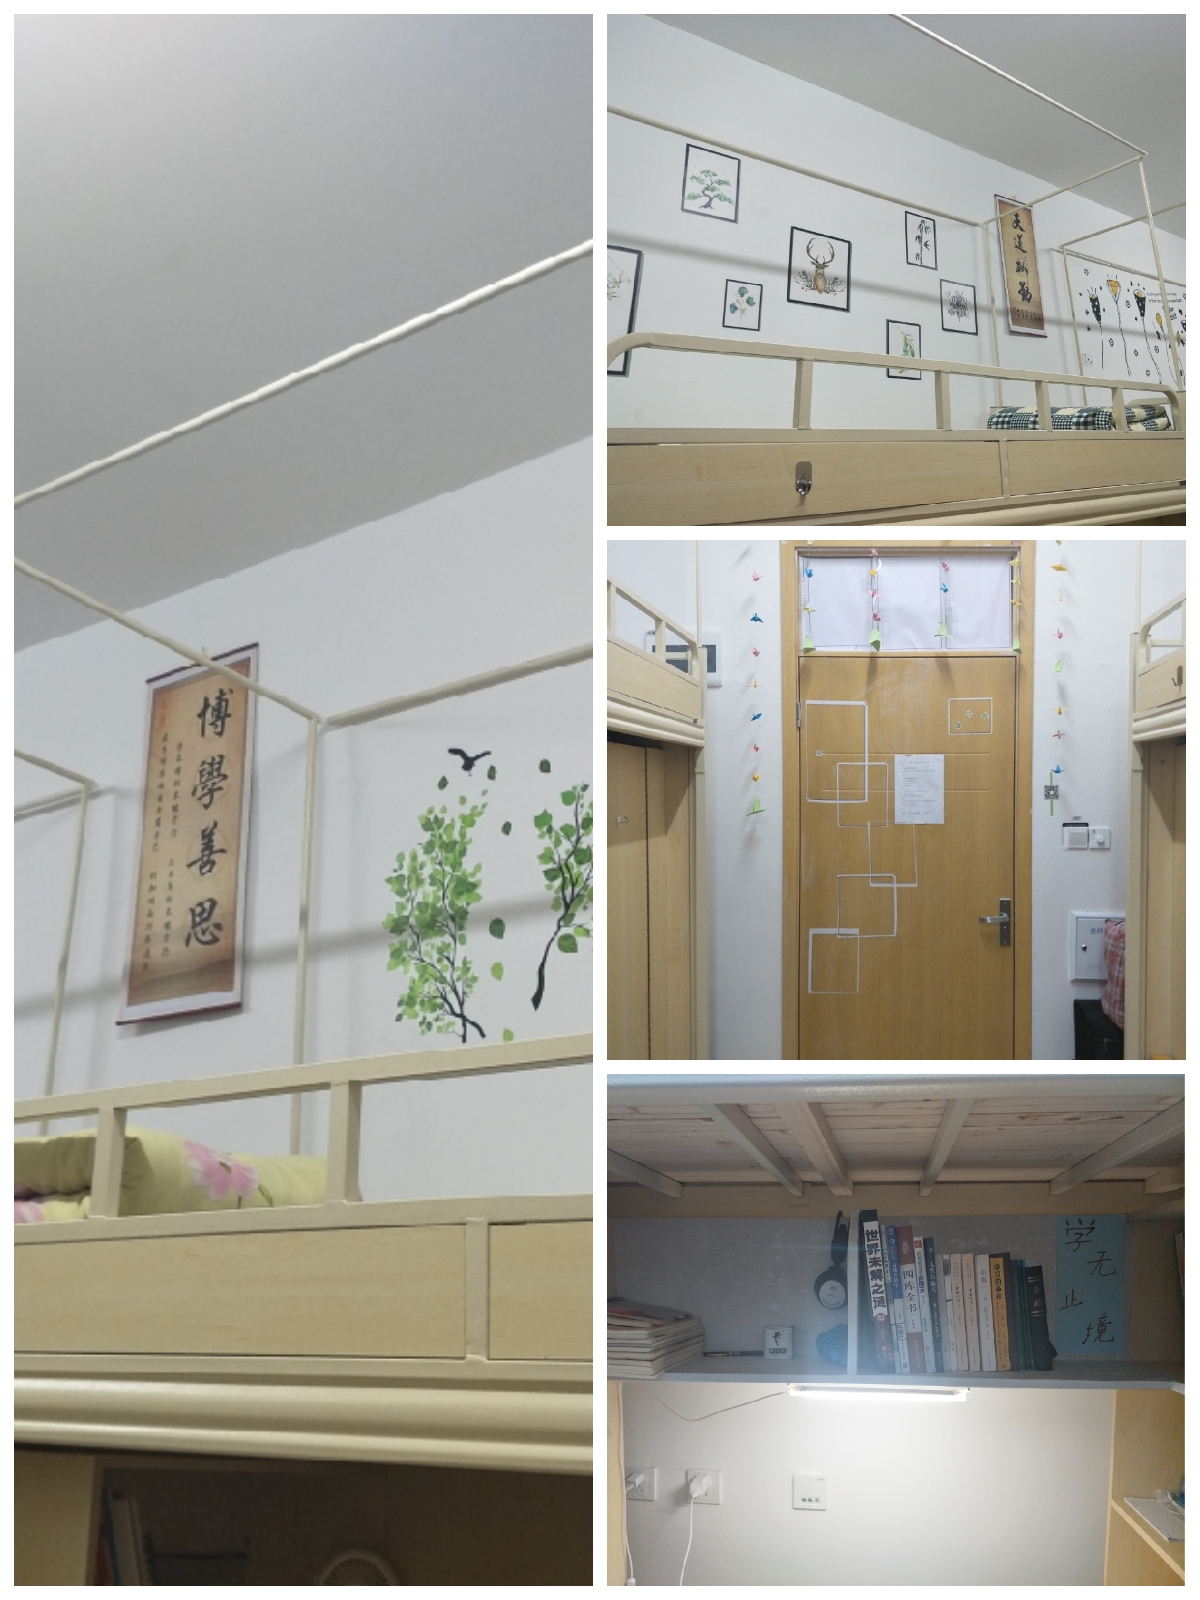 四川理工学院机械工程学院2018寝室文化设计大赛